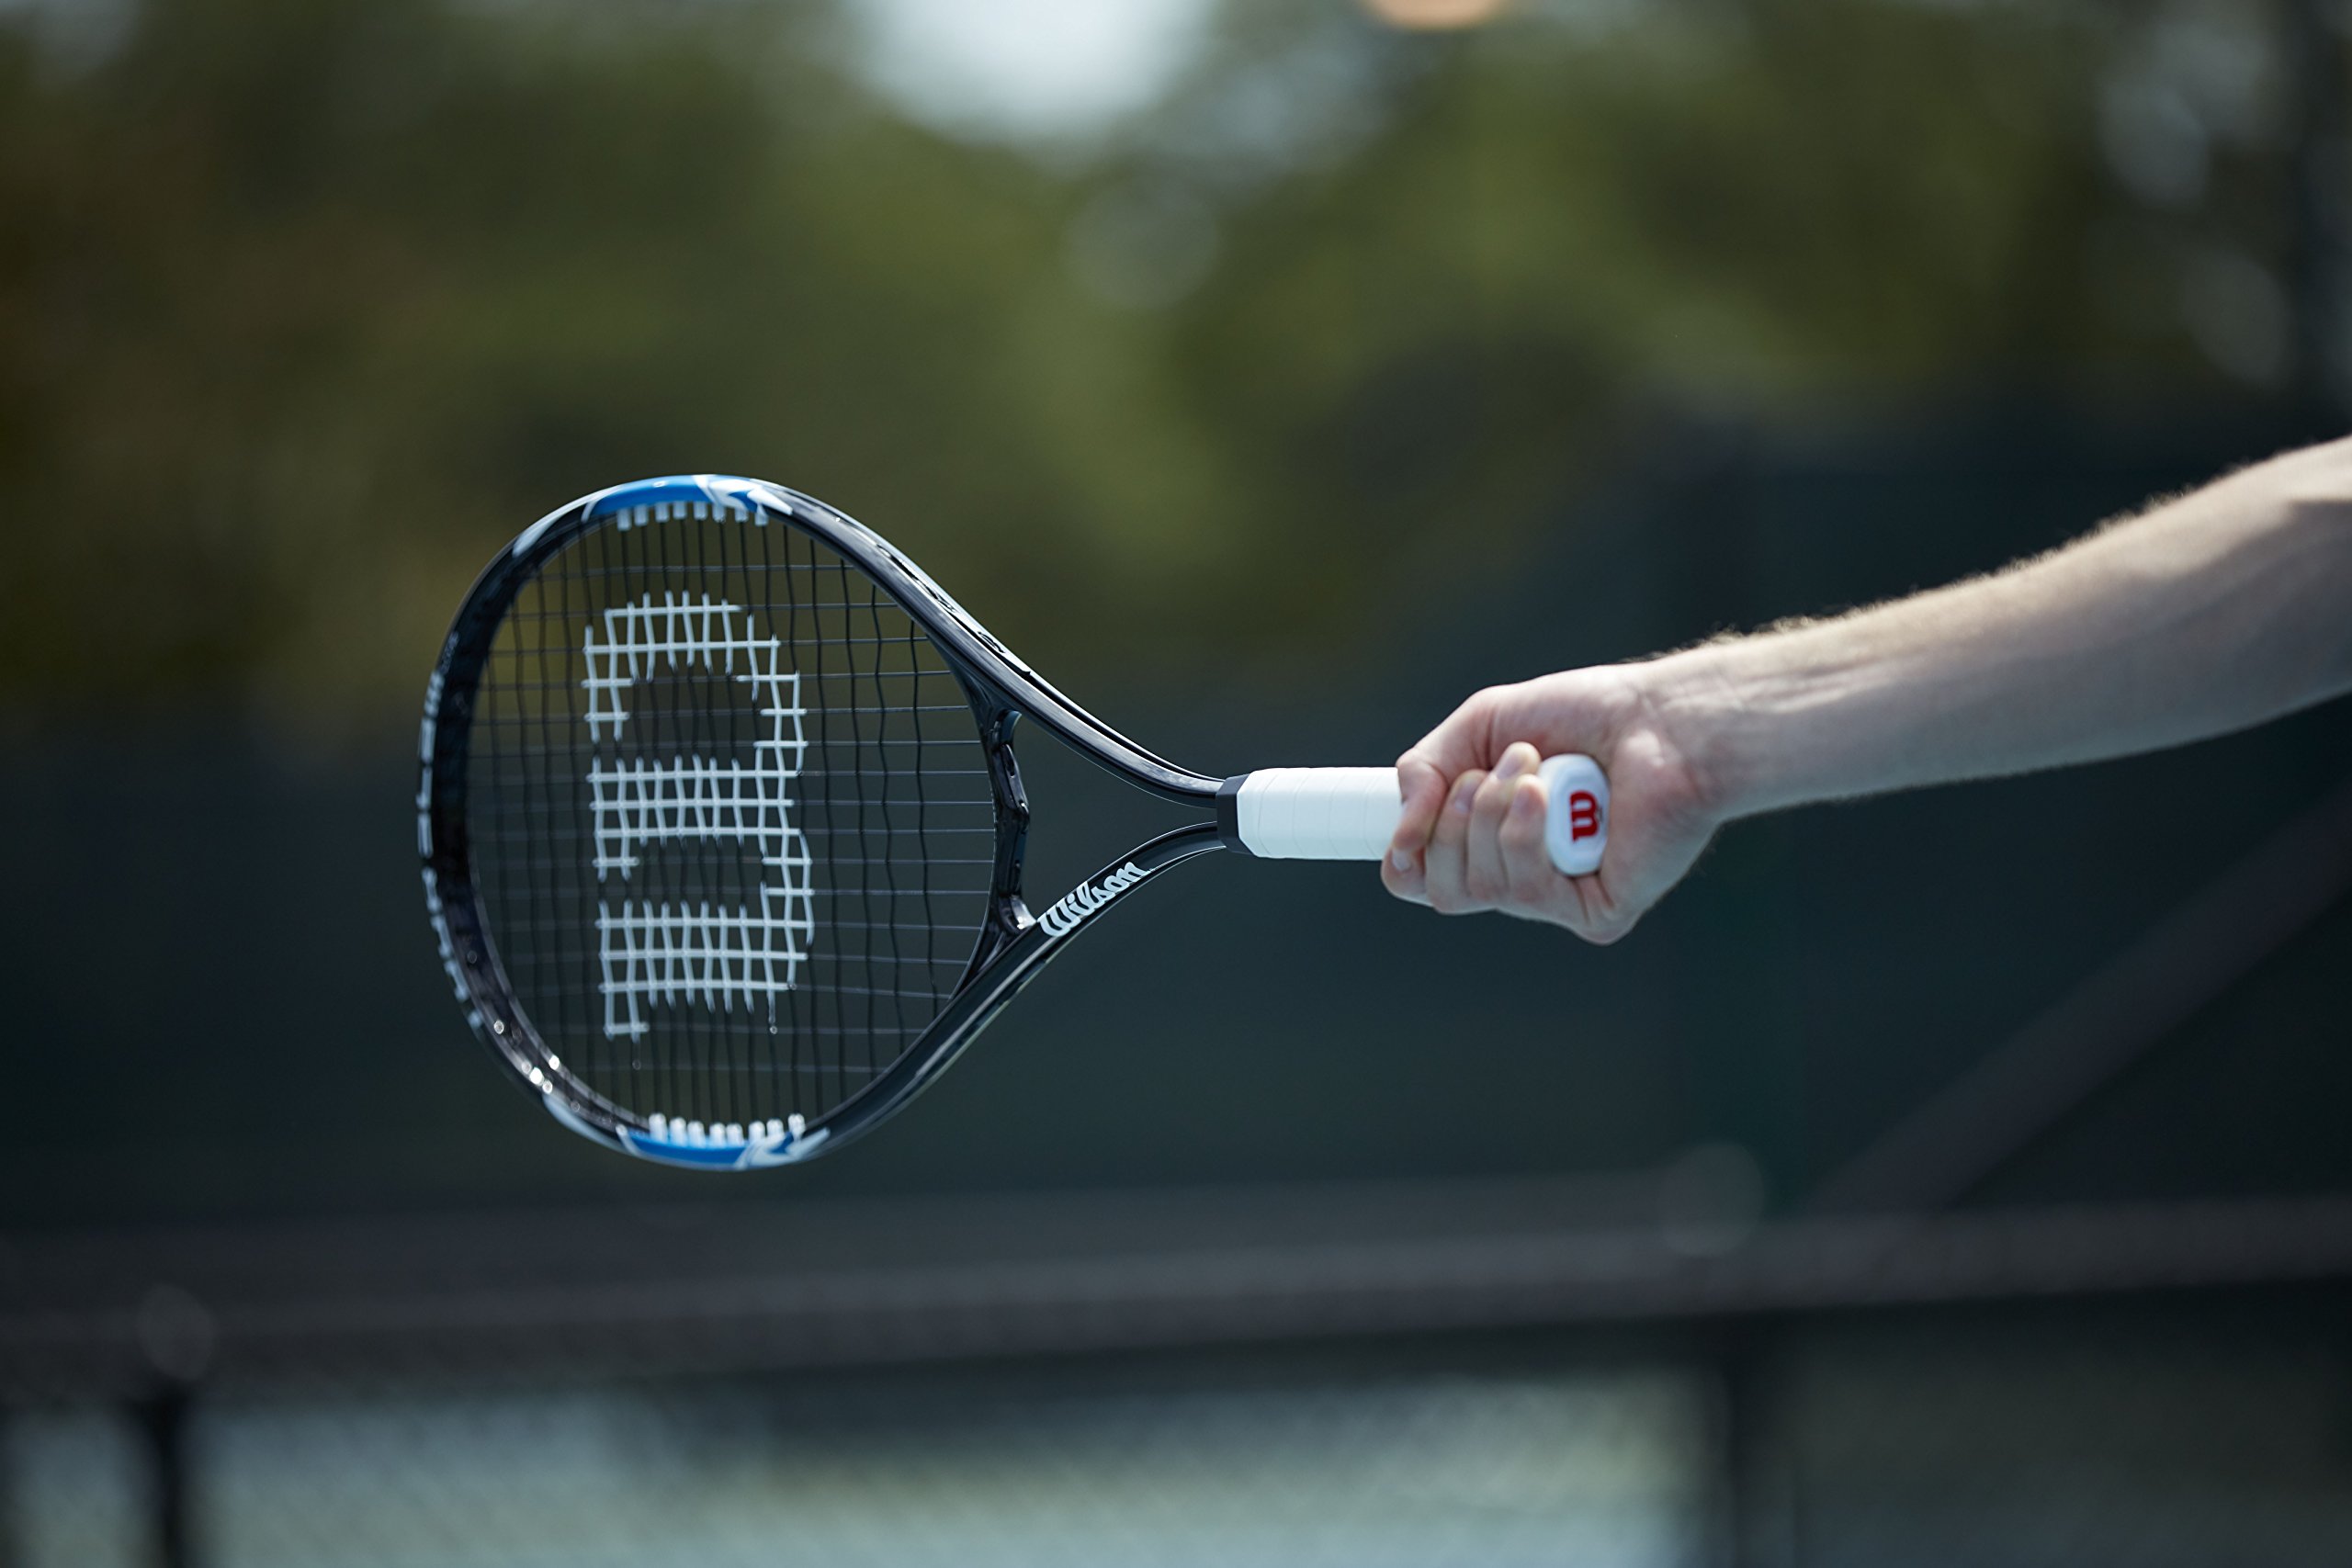 WILSON Tour Slam Adult Recreational Tennis Rackets